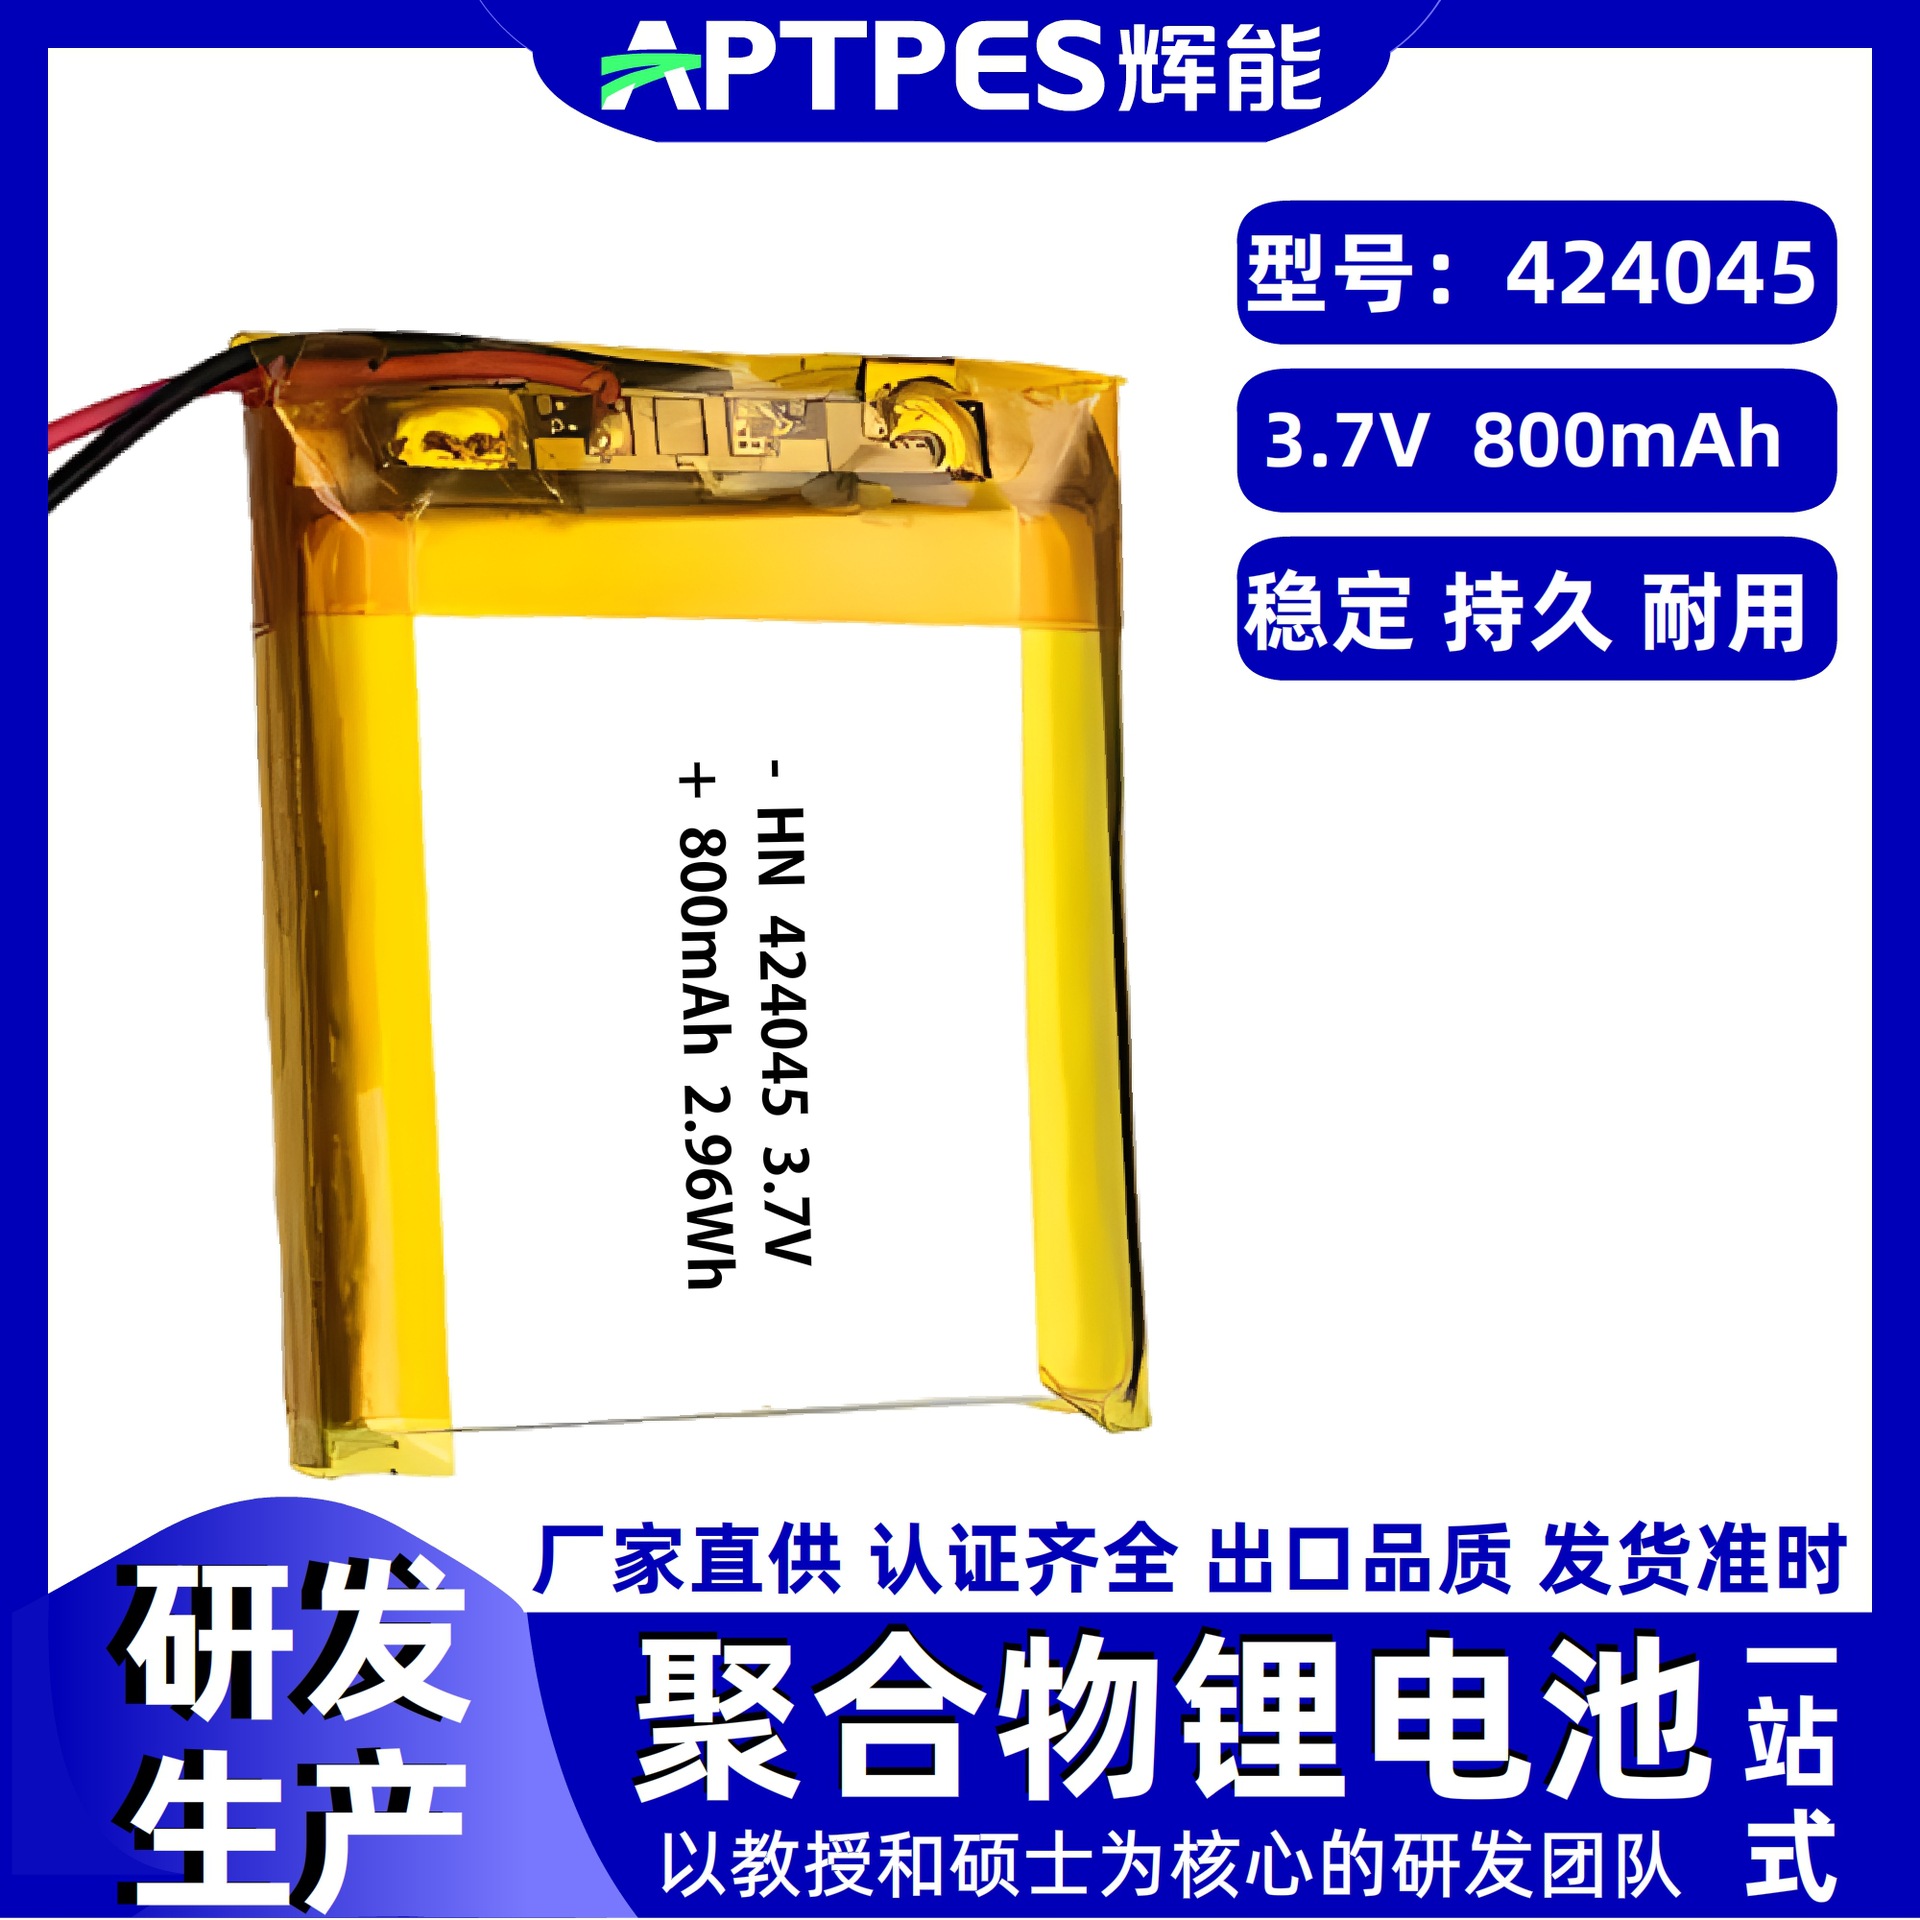 锂电池3.7V800mAh424045辉能生产宠物加热垫聚合物锂电池组芯厂家